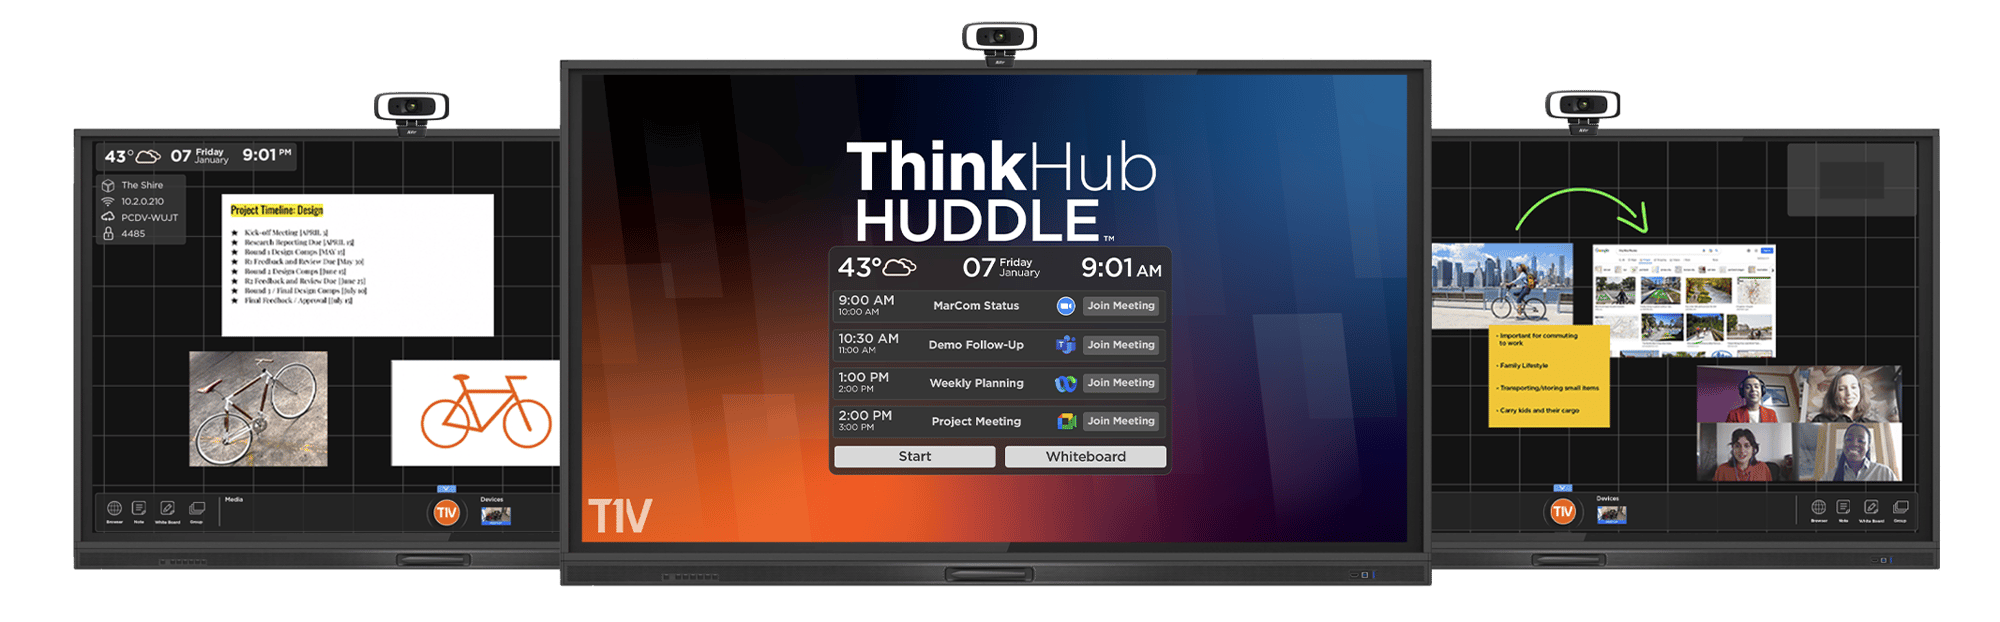 t1v-thinkhub-huddle-three-display-cutouts